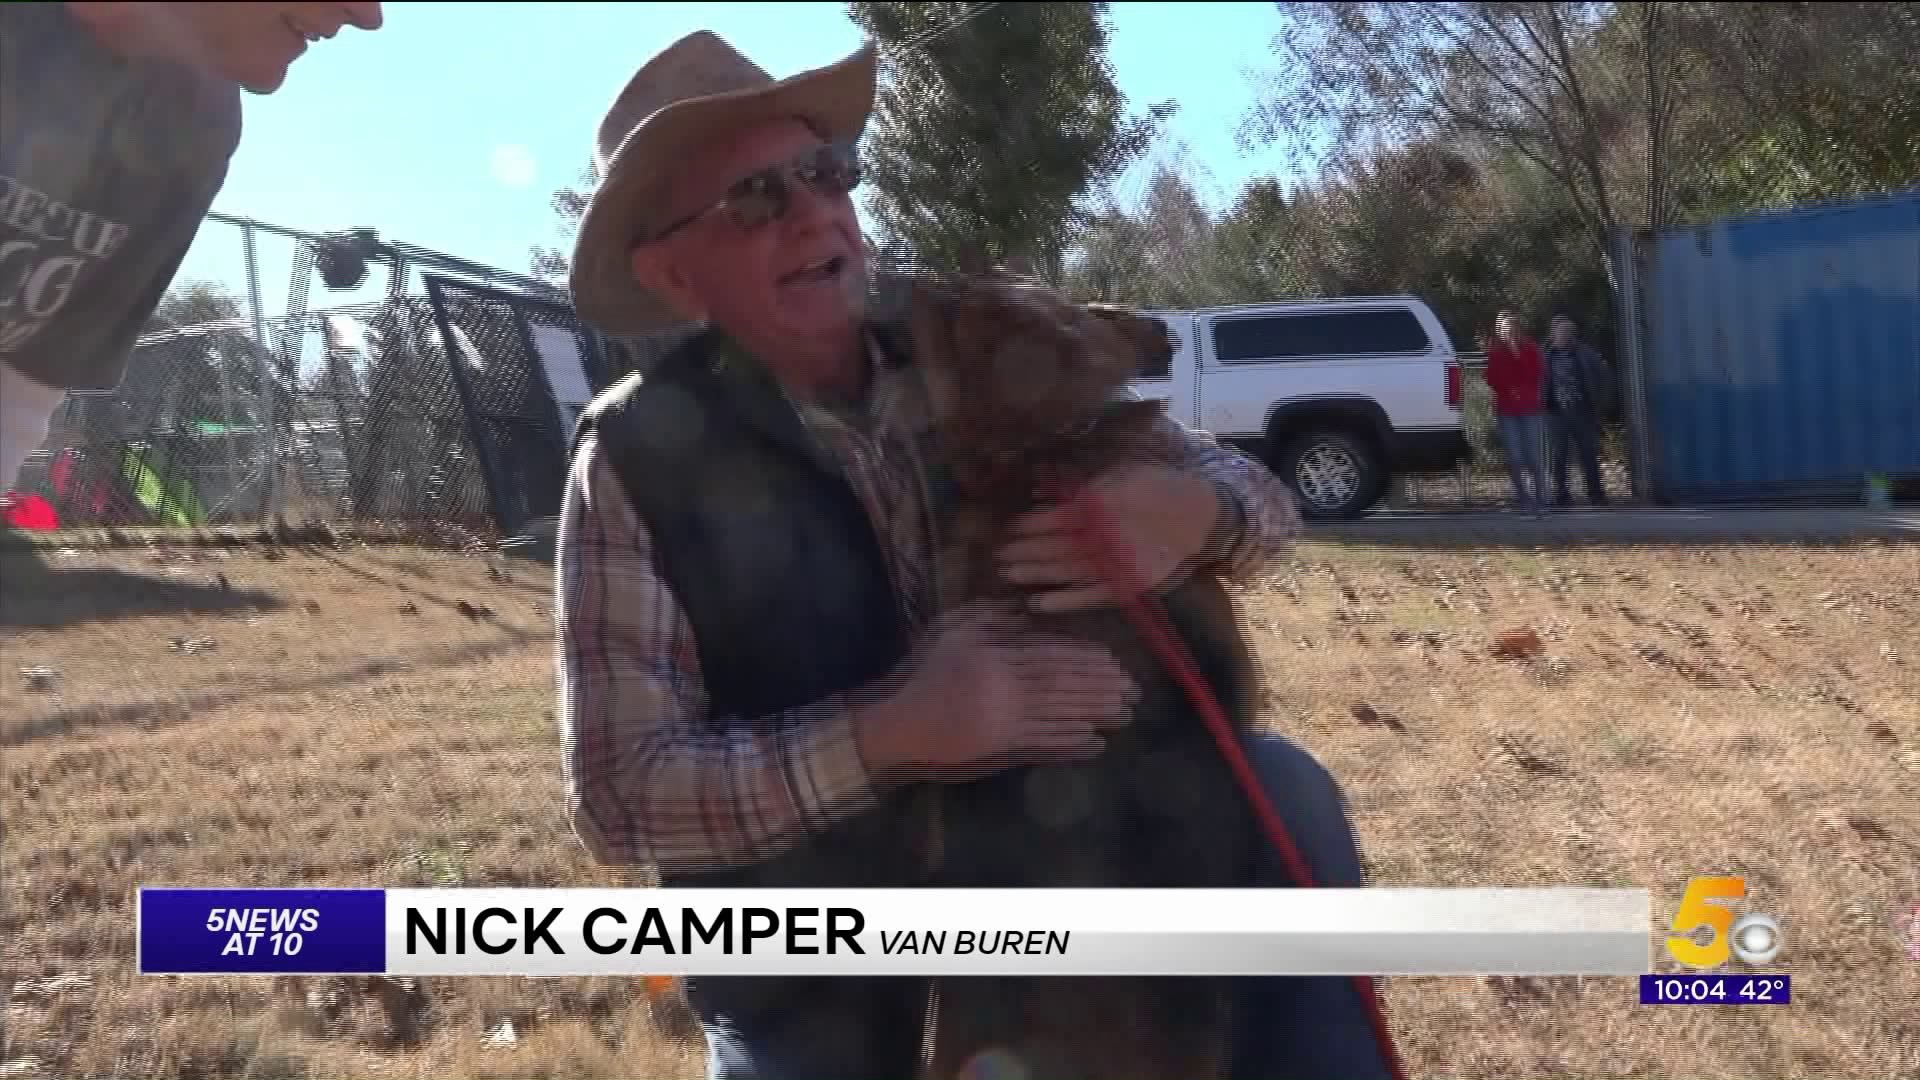 Man In Van Buren Reunites With His Dog After 18 Months Apart